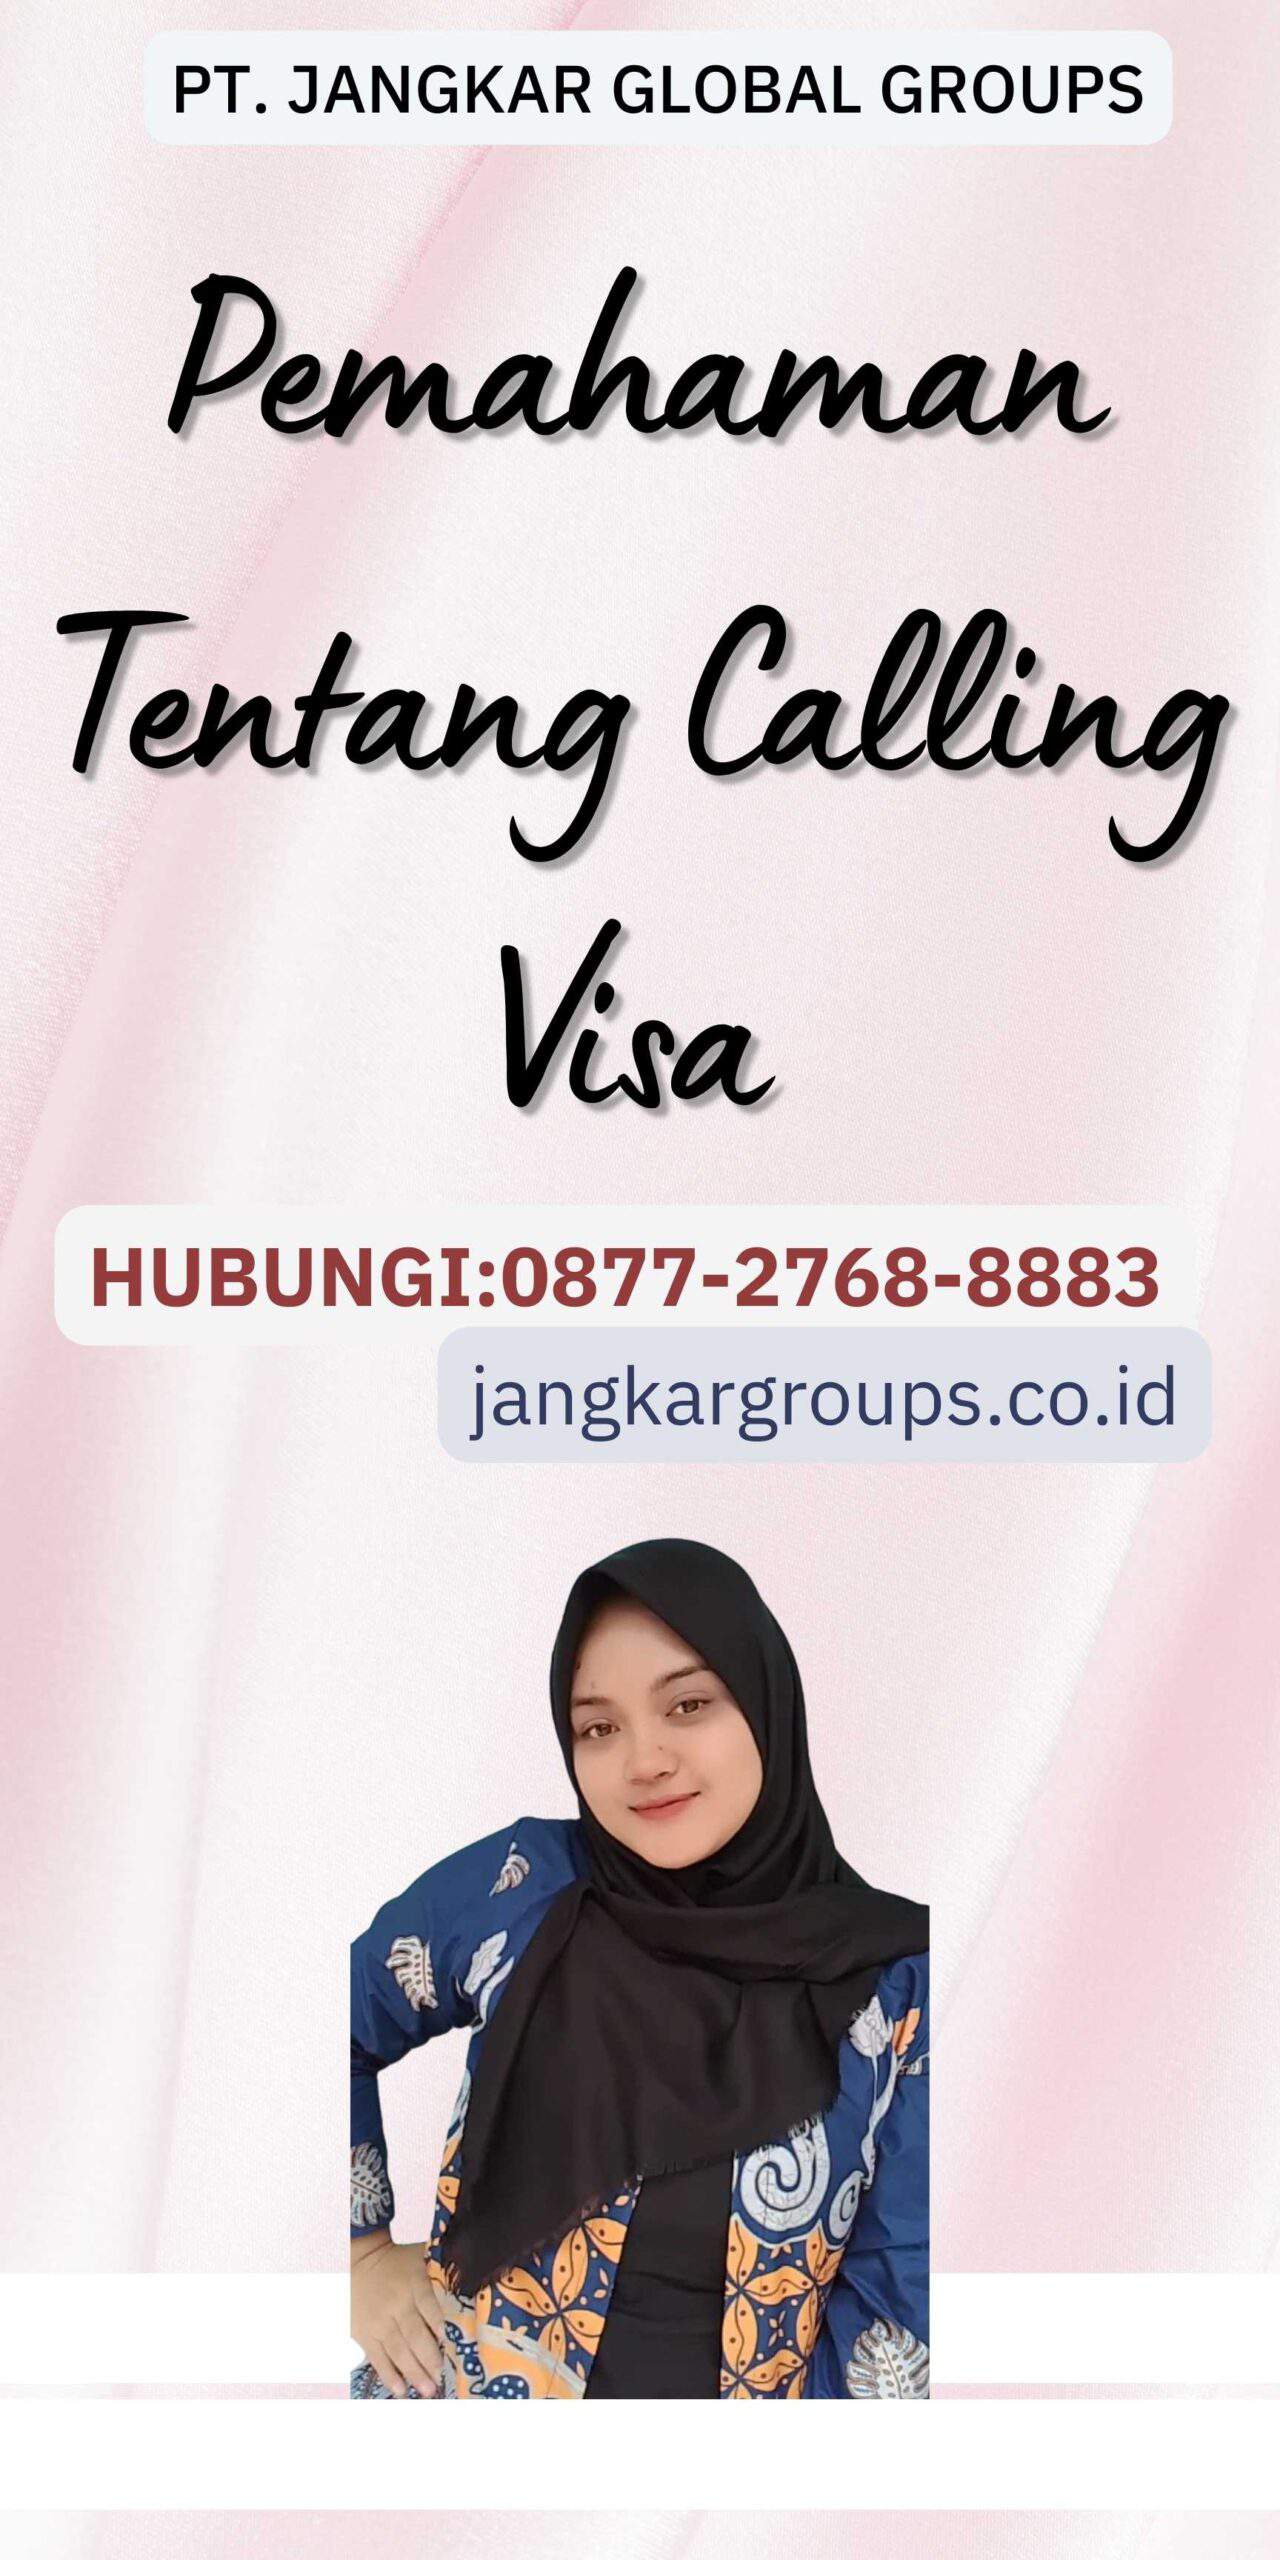 Pemahaman Tentang Calling Visa